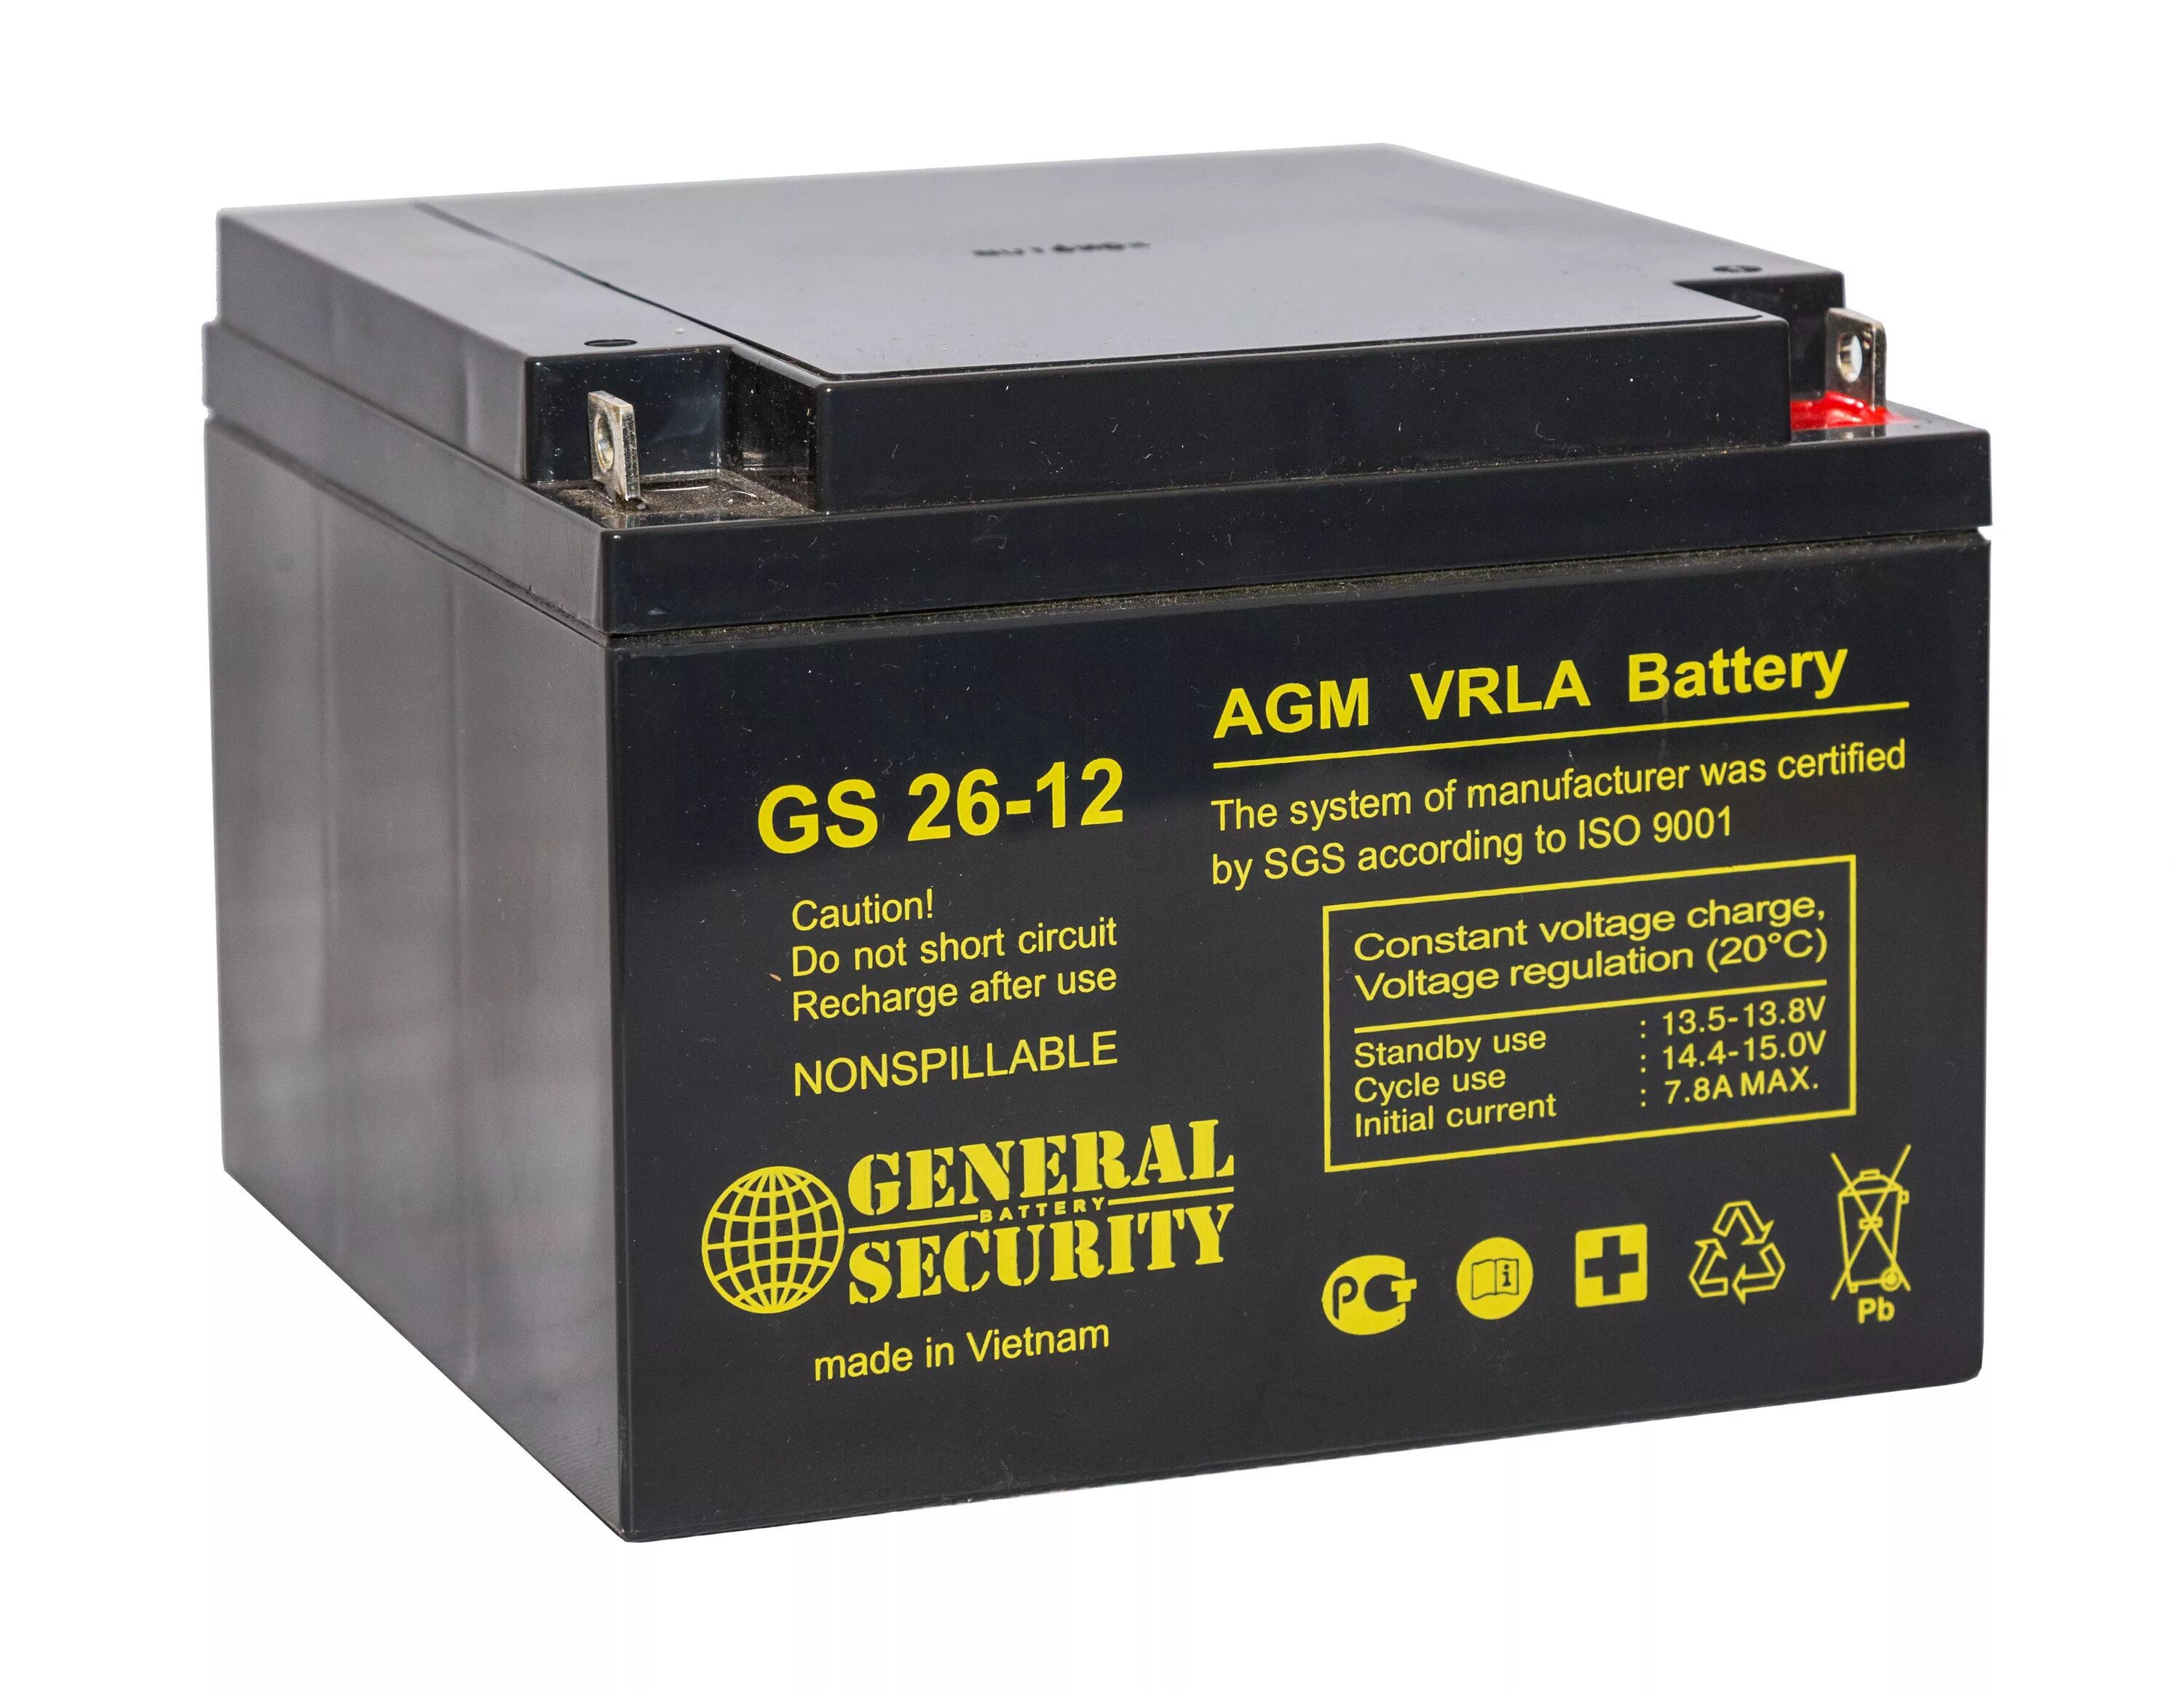 Аккумулятор св. General Security GS 12-12, 12 Ач. Аккумуляторная батарейка General Security GS 12-12. Gsl12-12 General Security аккумулятор. Свинцово-кислотный аккумулятор General Security GS 12-12 (12в 12ач / 12v 12ah).